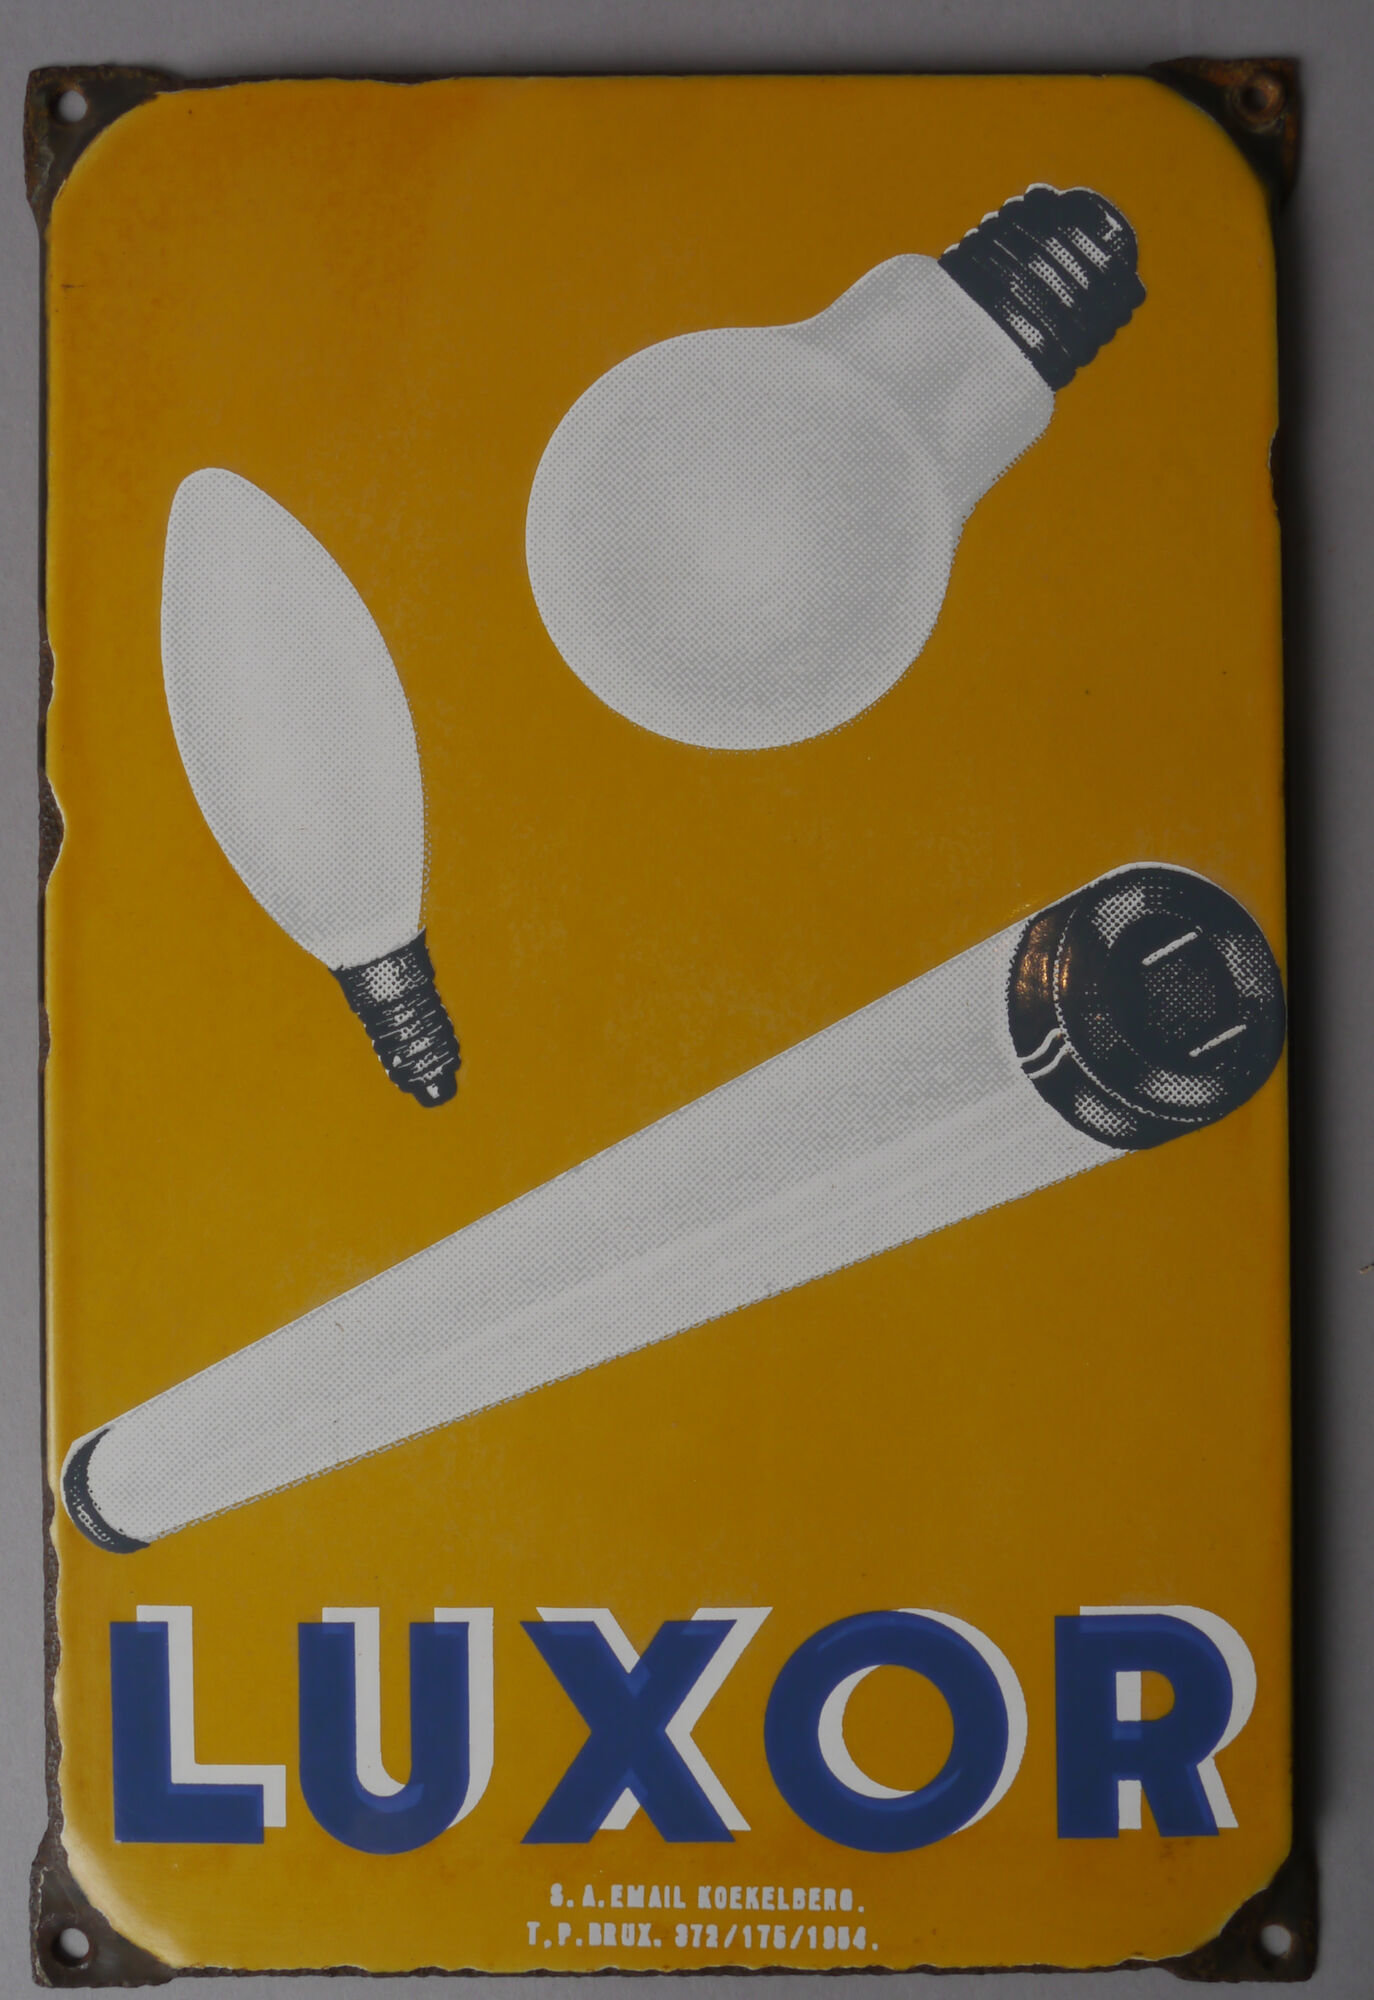 Geëmailleerd reclamebord voor lampen van het merk Luxor